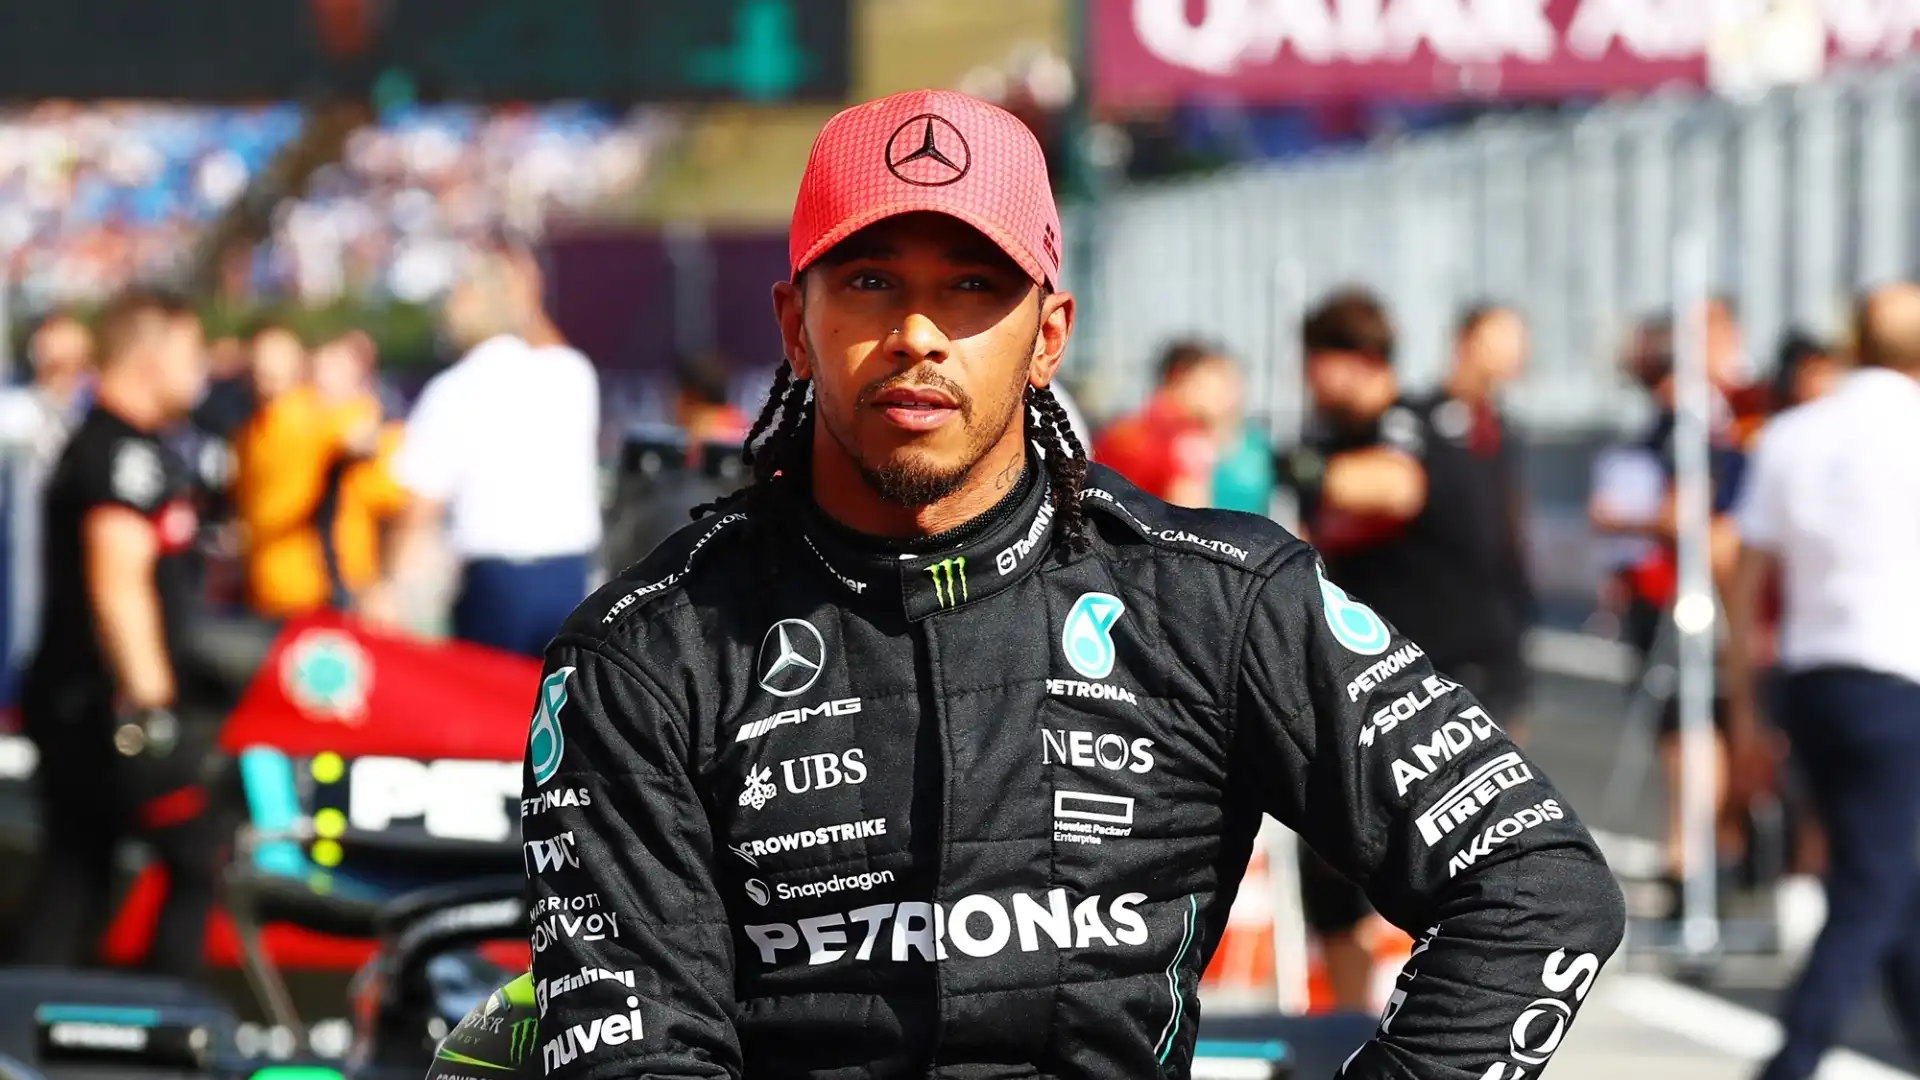 Il secondo posto nella speciale graduatoria, decisa da un sondaggio tra i piloti di F1, è andato a Lewis Hamilton